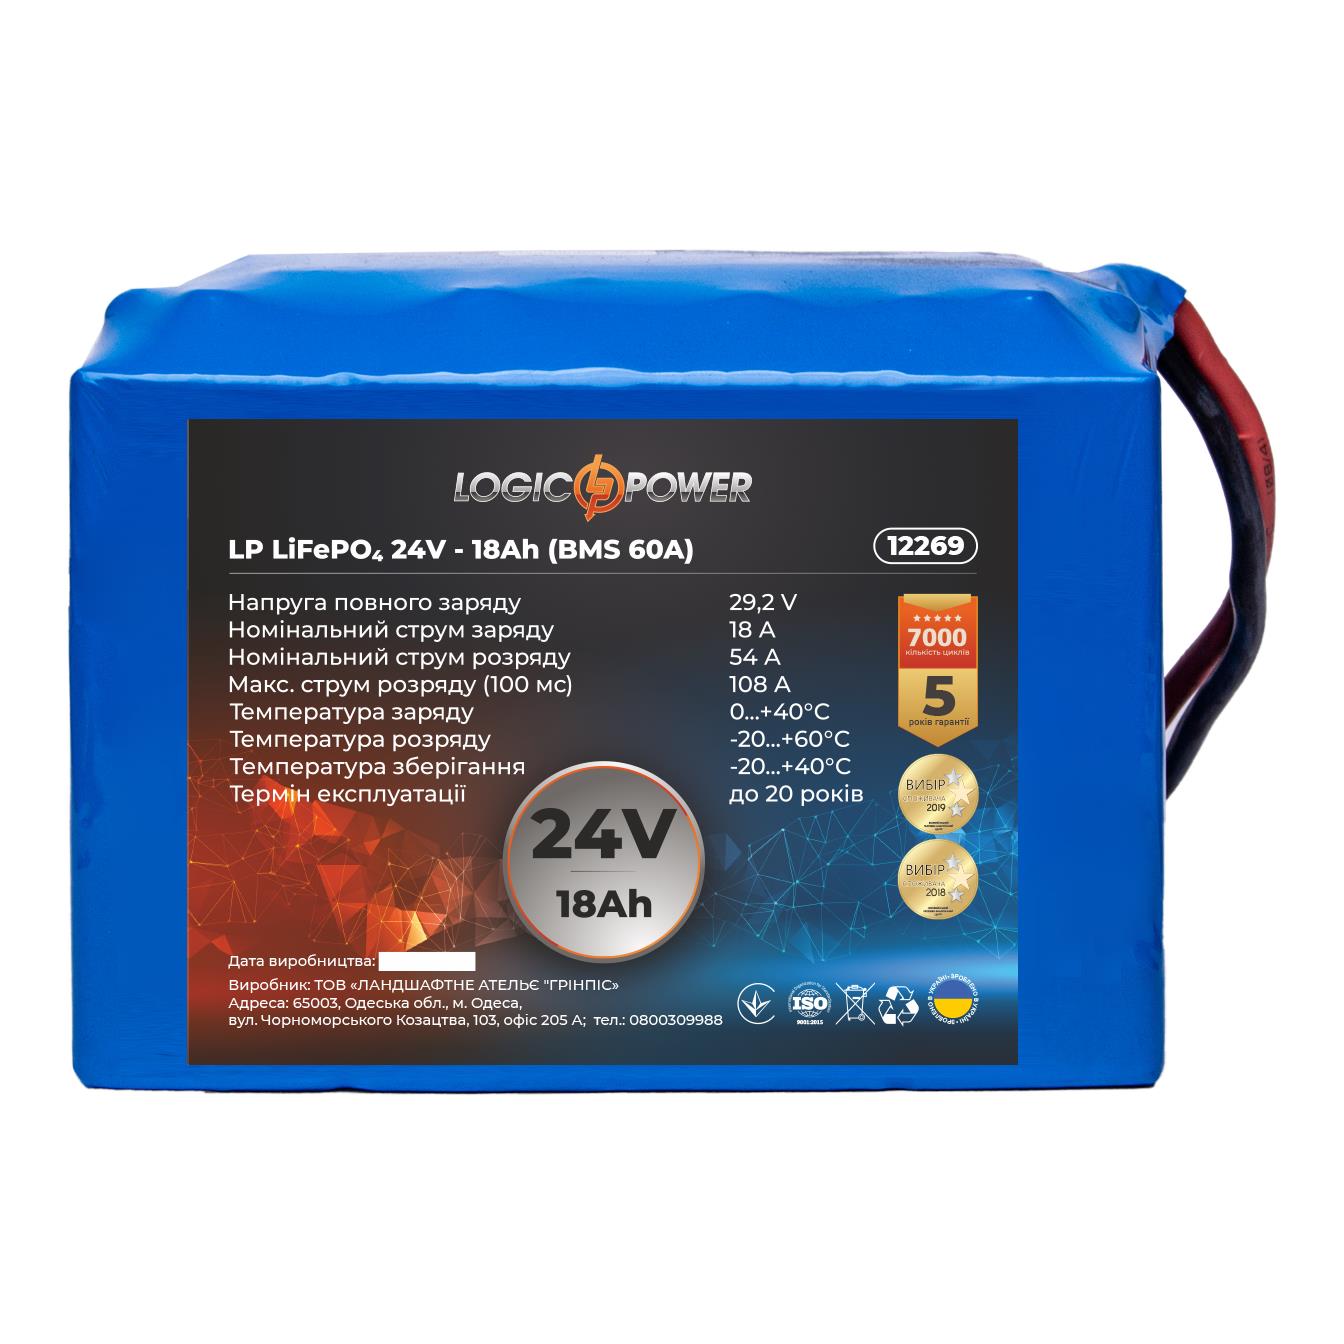 Аккумулятор литий-железо-фосфатный LogicPower LP LiFePО4 24V - 18 Ah (BMS 60A) (12269) в интернет-магазине, главное фото